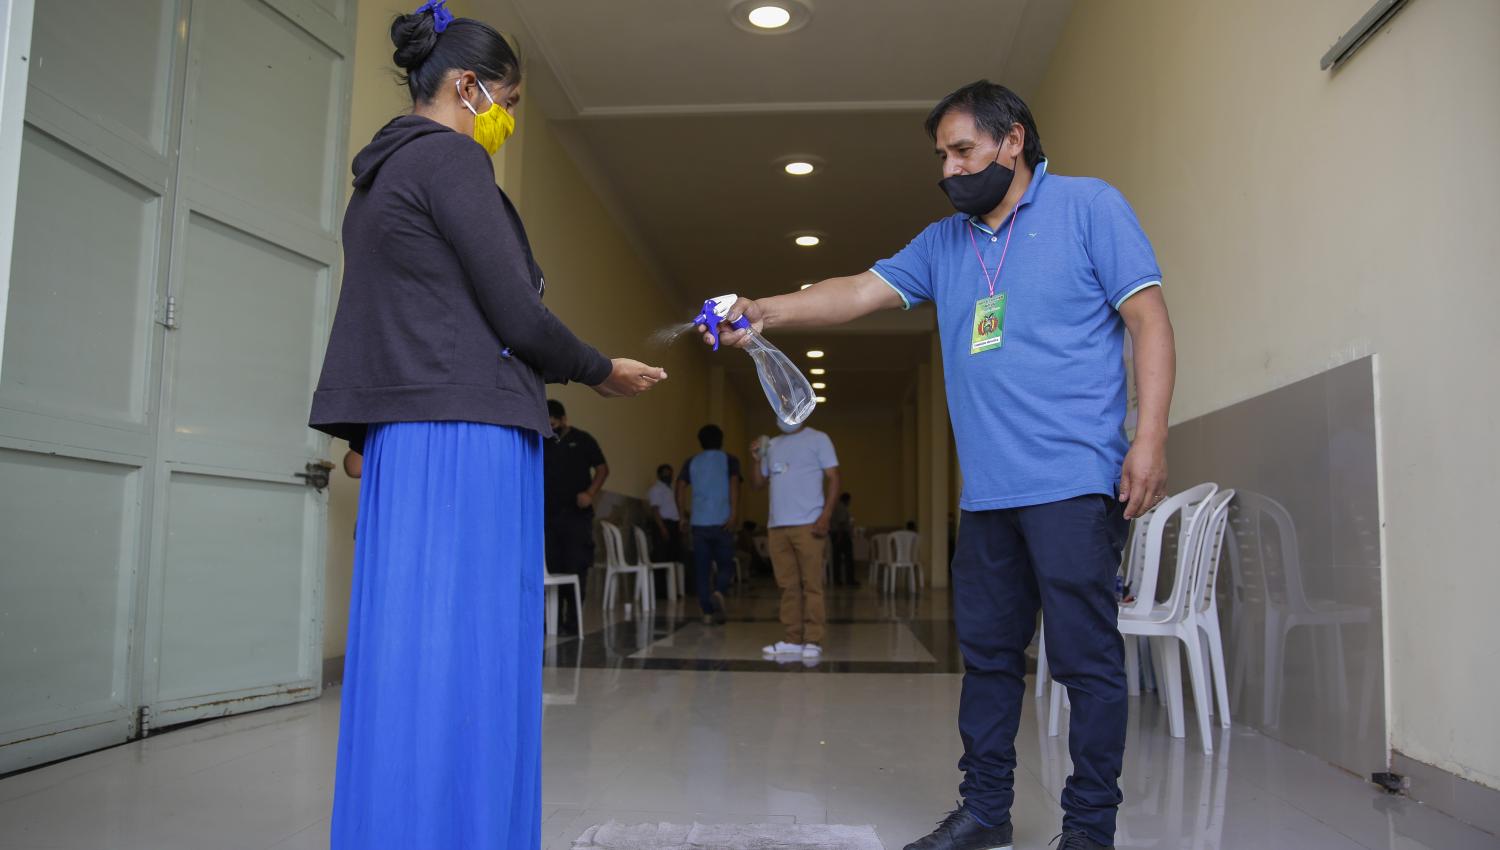 ELECCIÓN. Casi el 74% de los integrantes de la comunidad boliviana residente en Tucumán que votaron hoy se inclinaron por el Movimiento al Socialismo.